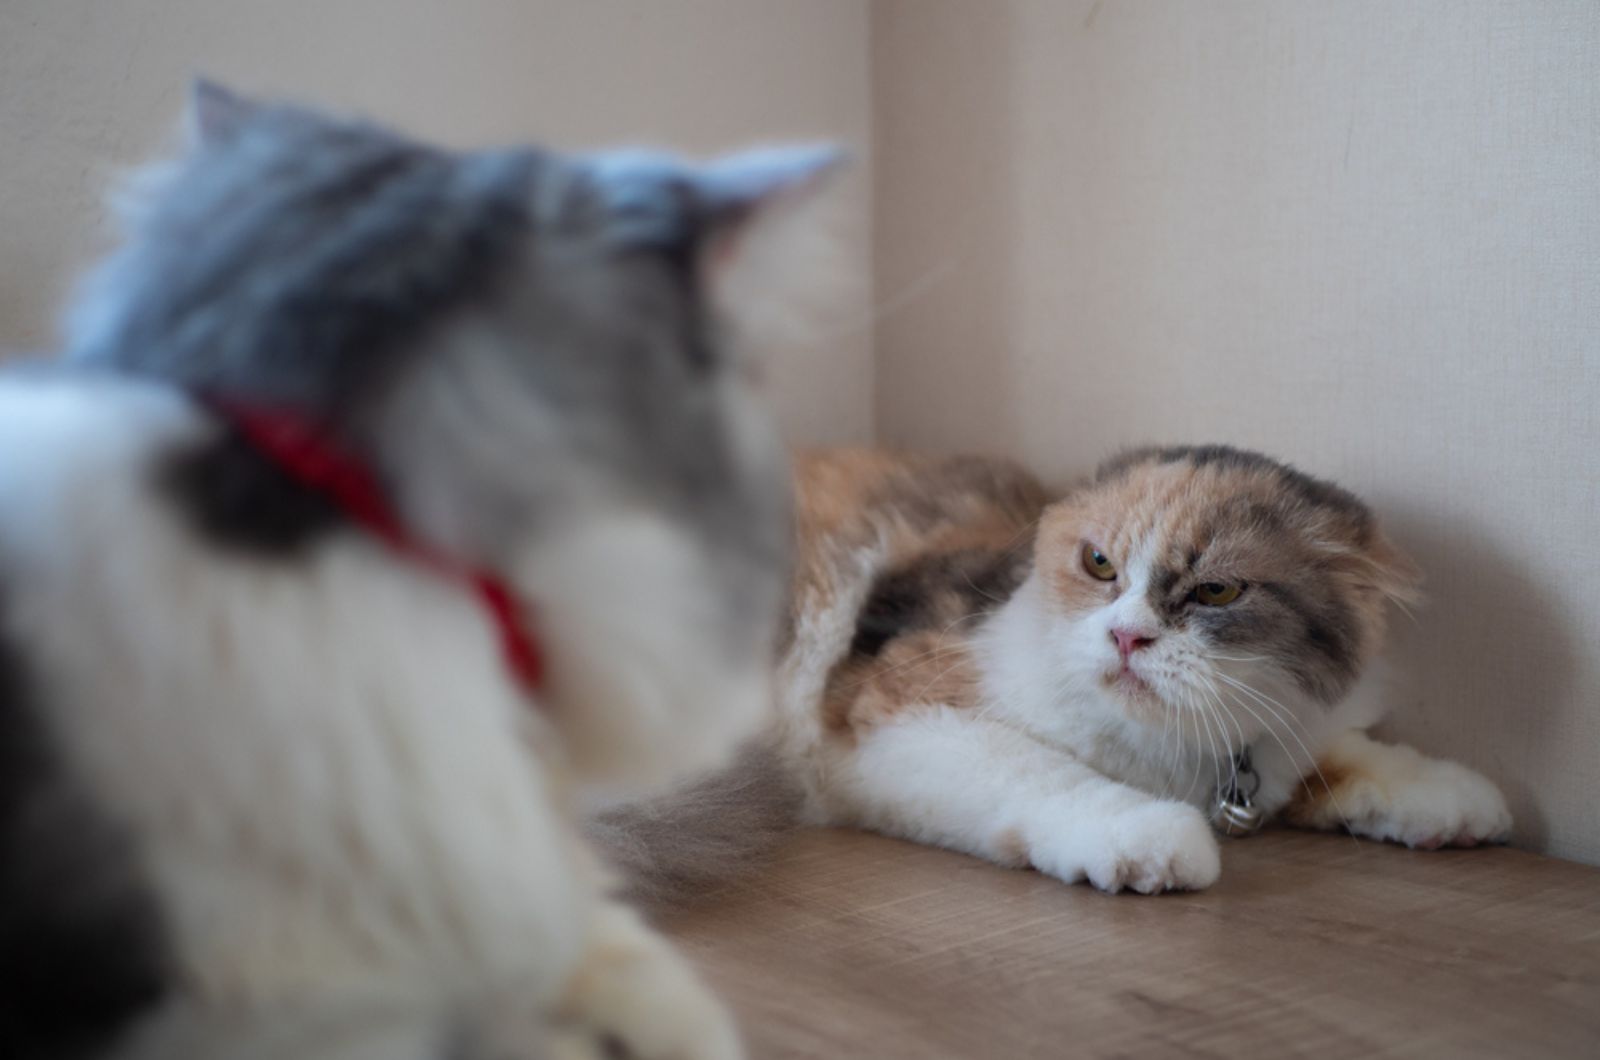 Boze kat sist naar een andere kat